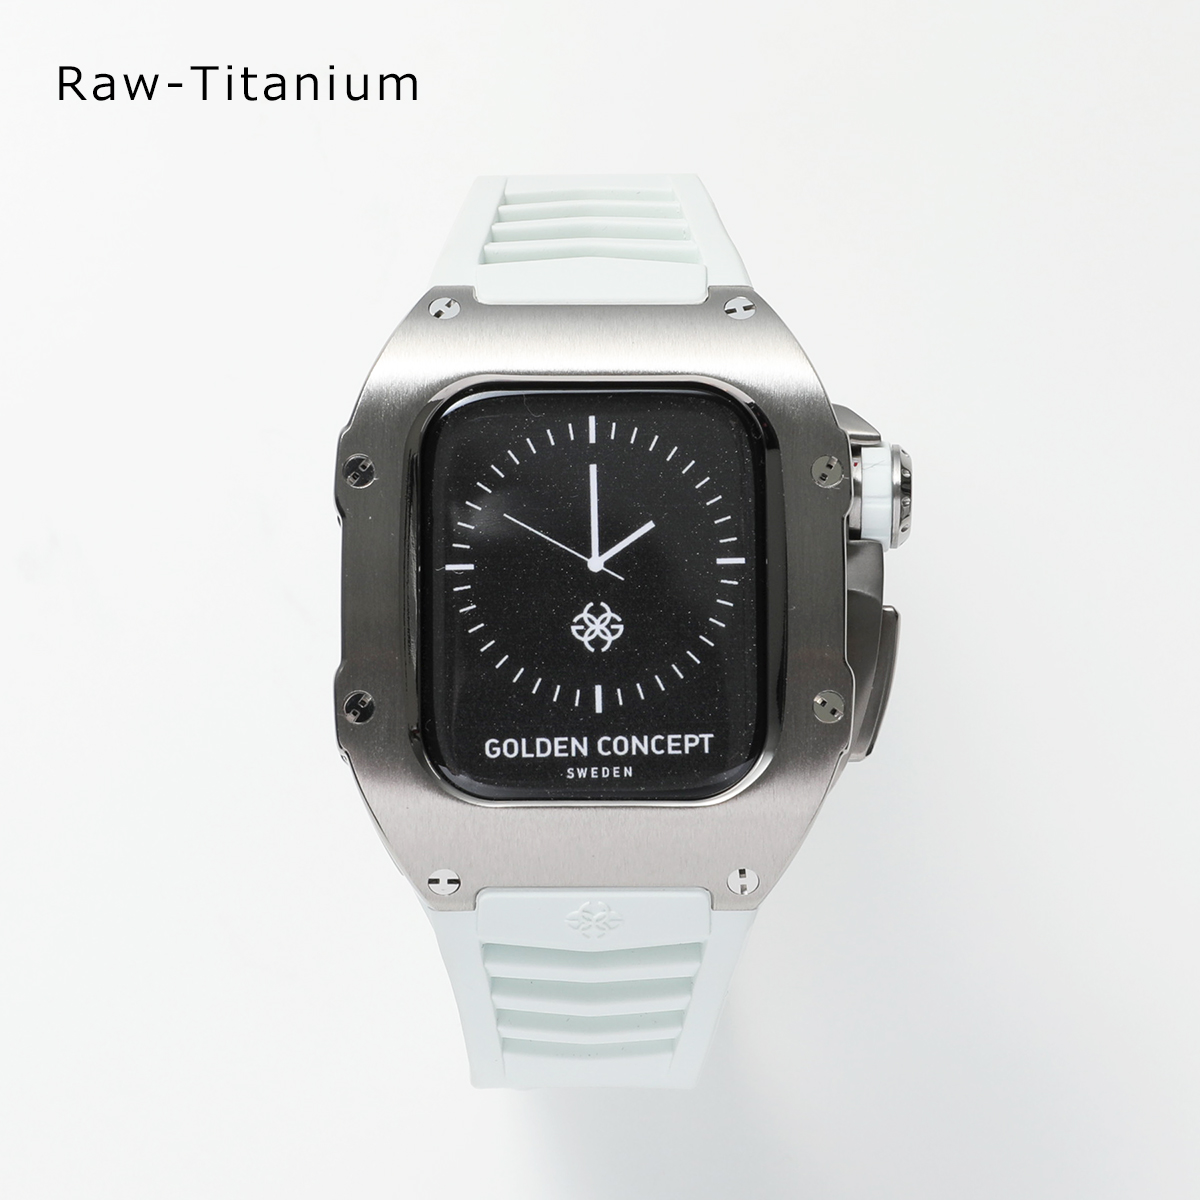 GOLDEN CONCEPT ゴールデンコンセプト Apple Watch Series 7 8 9 アップルウォッチケース RST41 メンズ  チタン ラバーストラップ Rose-Gold-Titanium